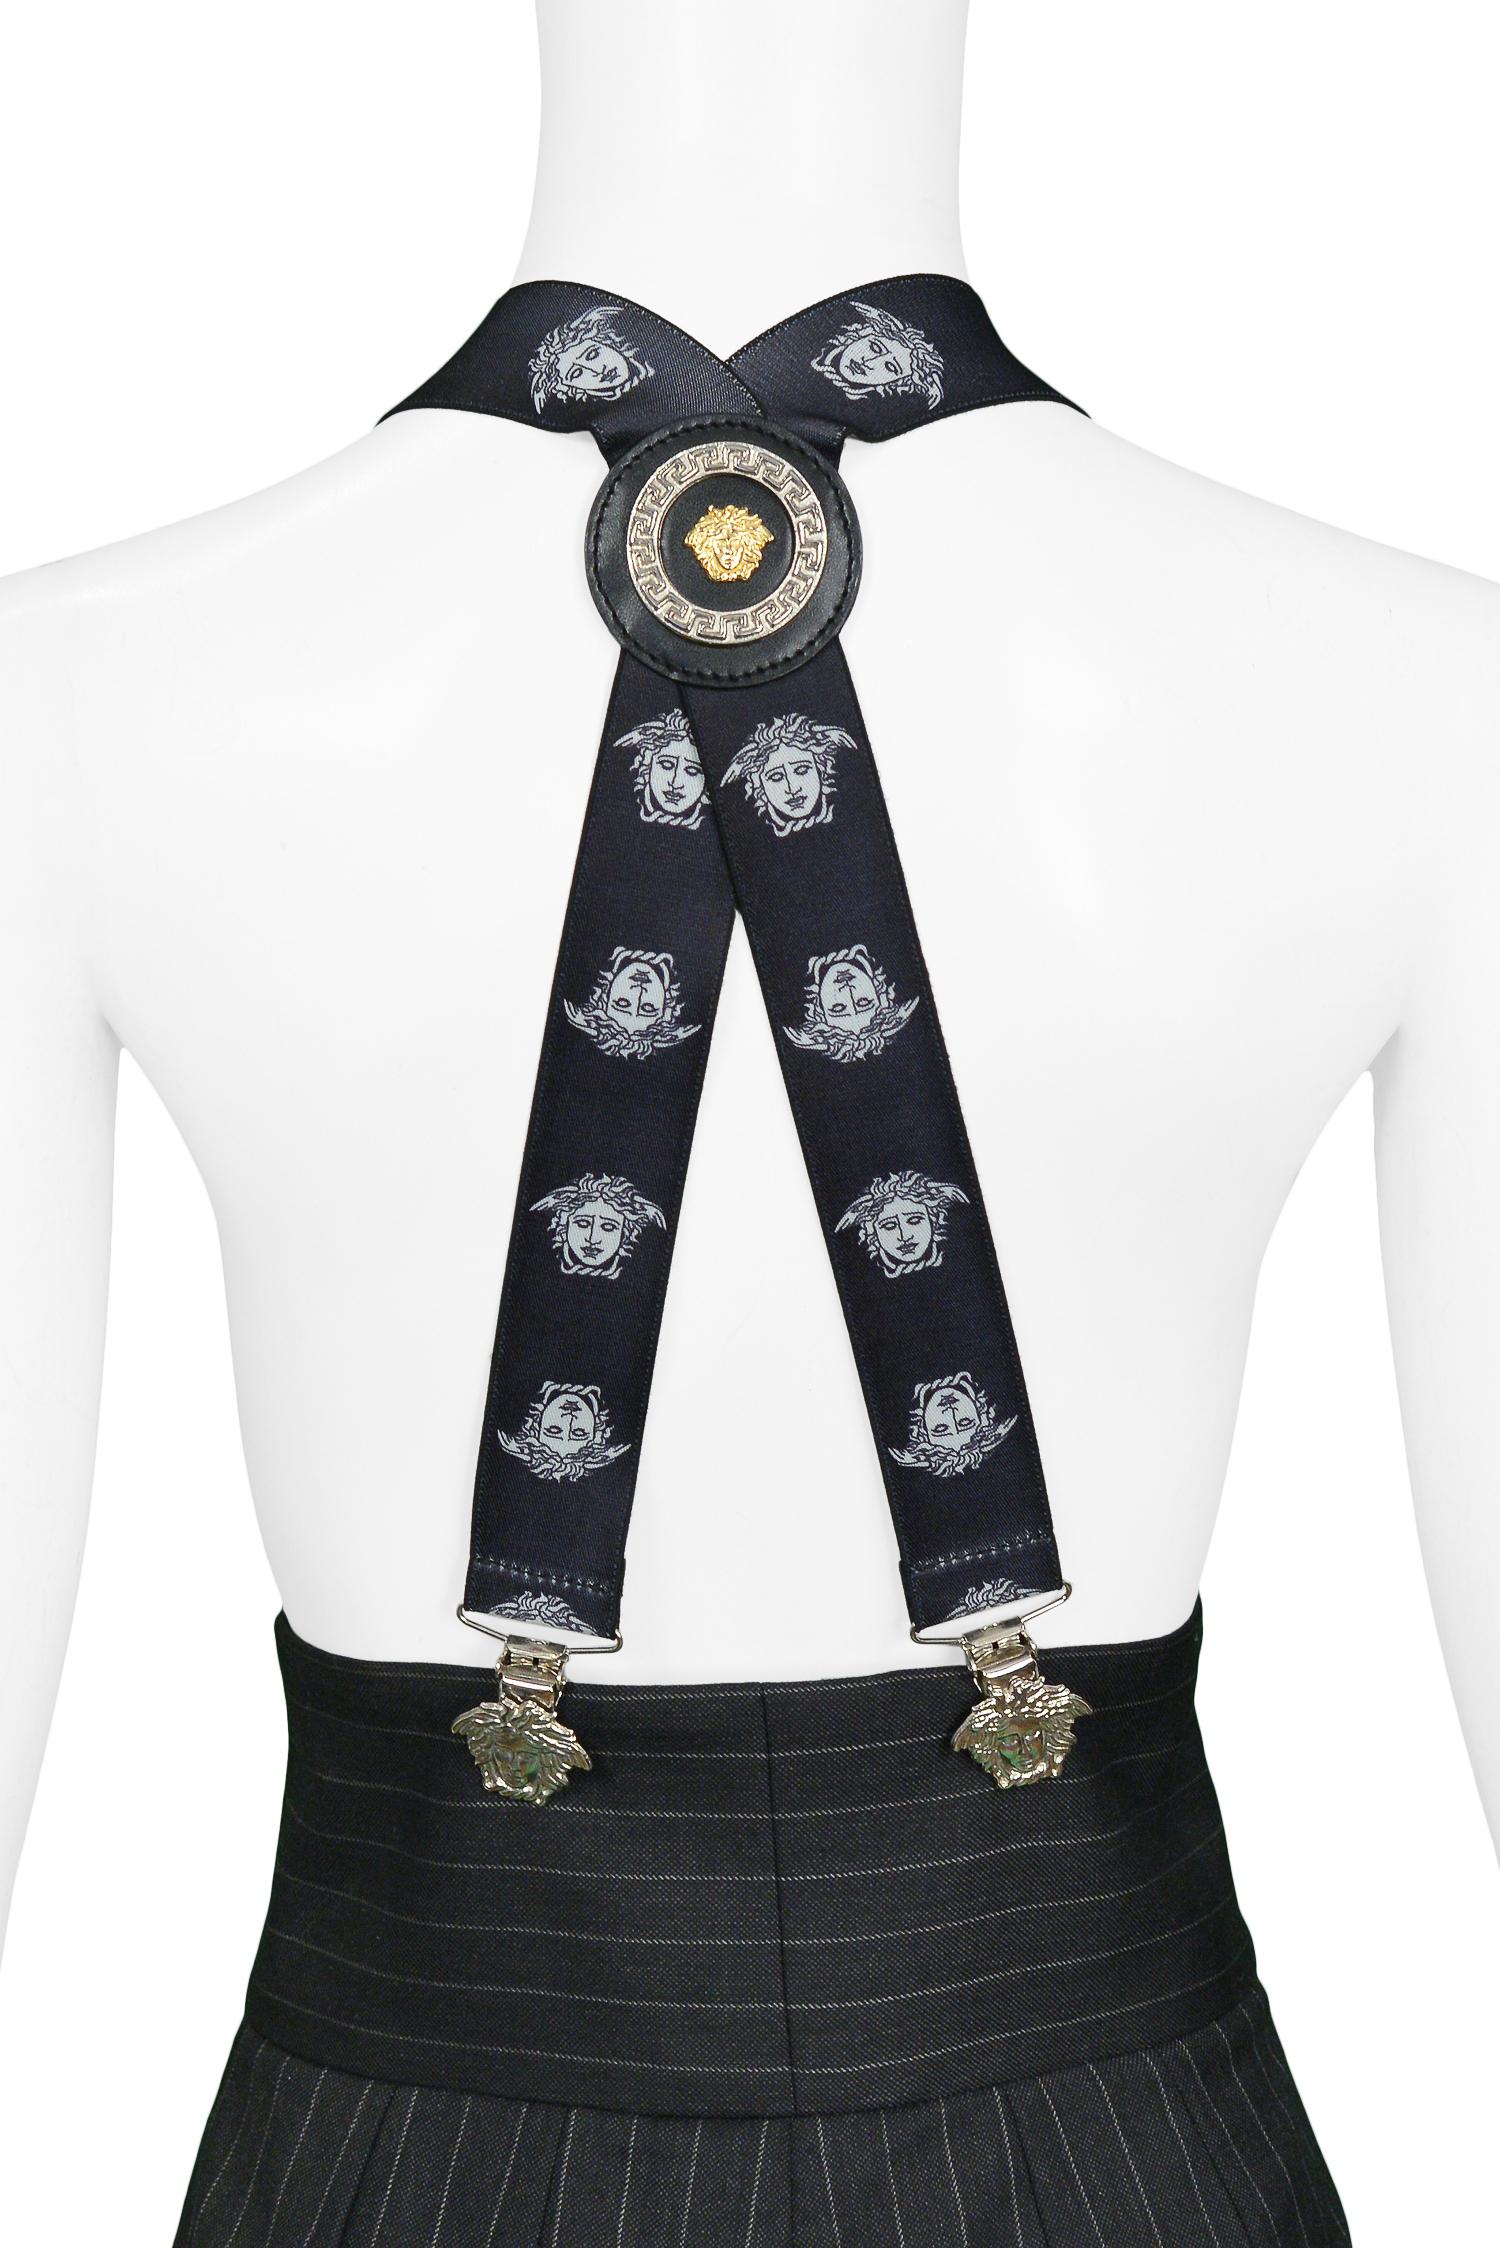 Bretelles vintage Gianni Versace noires et blanches avec des têtes de Méduse imprimées, des clips de tête de Méduse en argent et un médaillon à l'arrière. Vers 1990.

Excellent état.

Taille : TAILLE UNIQUE